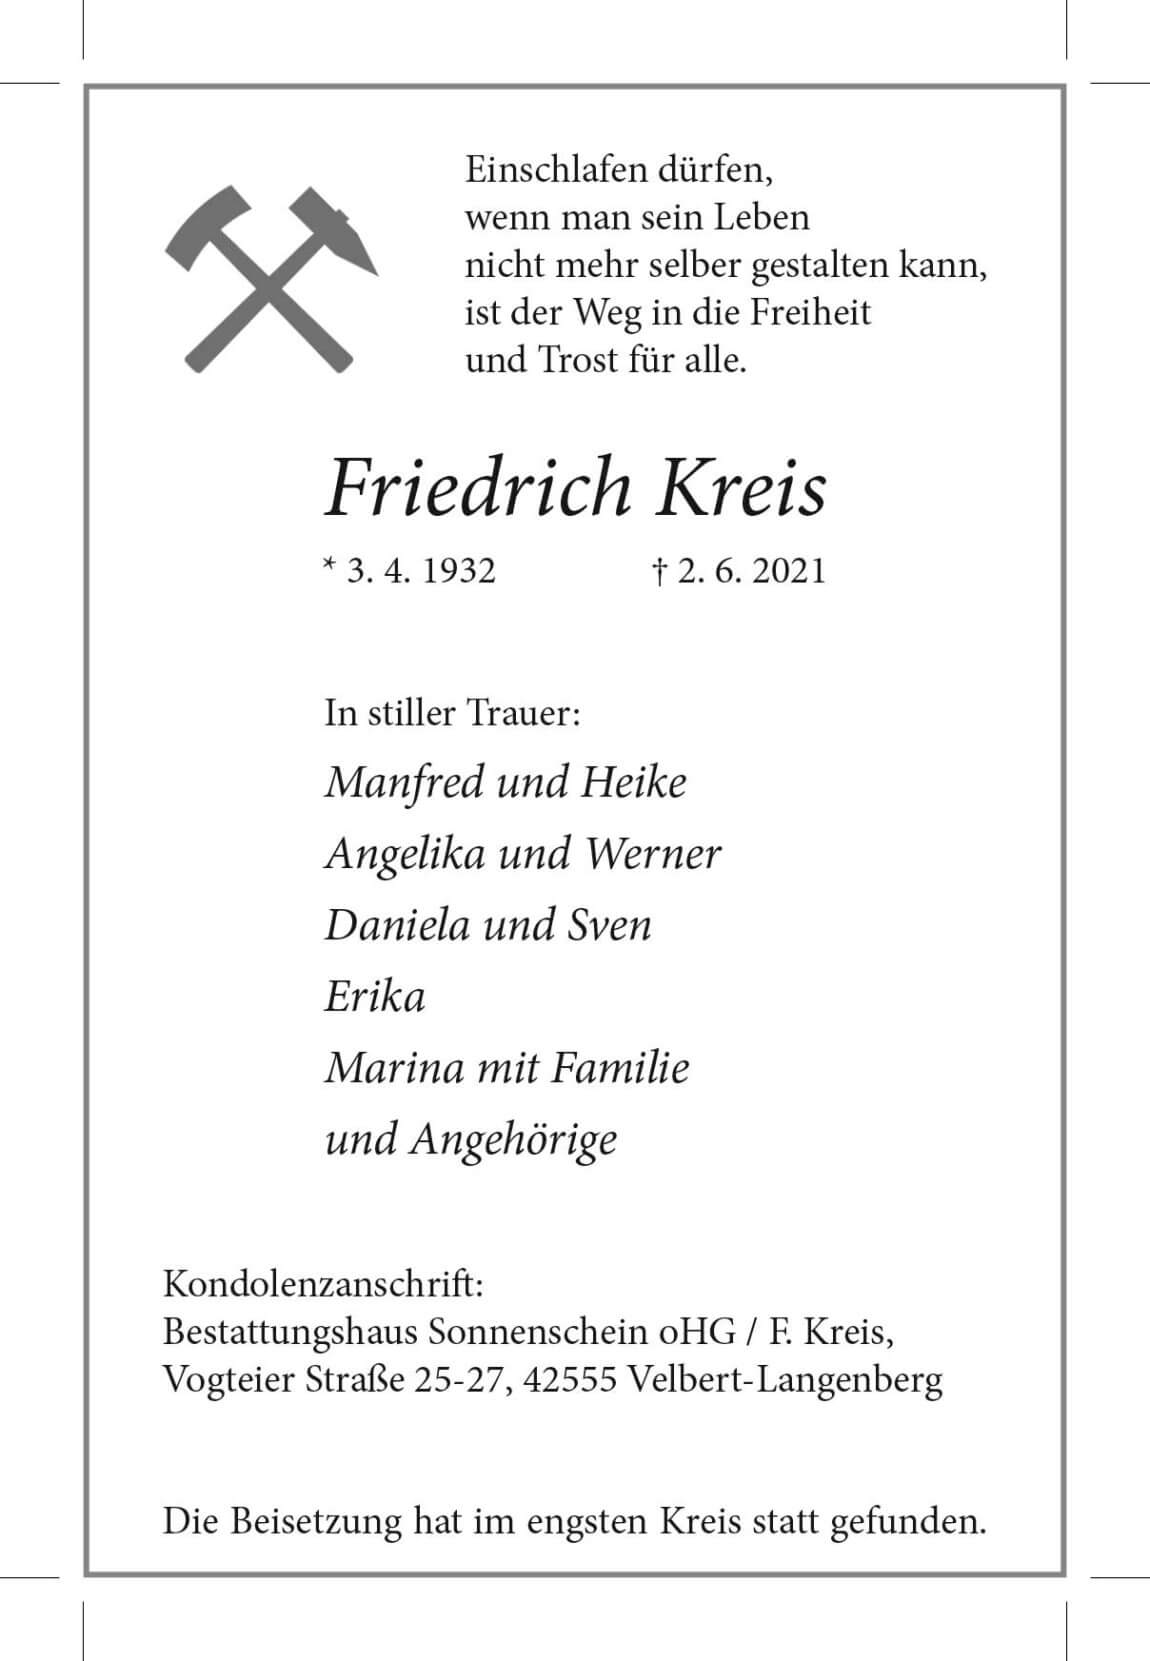 12.06.2021_Kreis-Friedrich.jpg